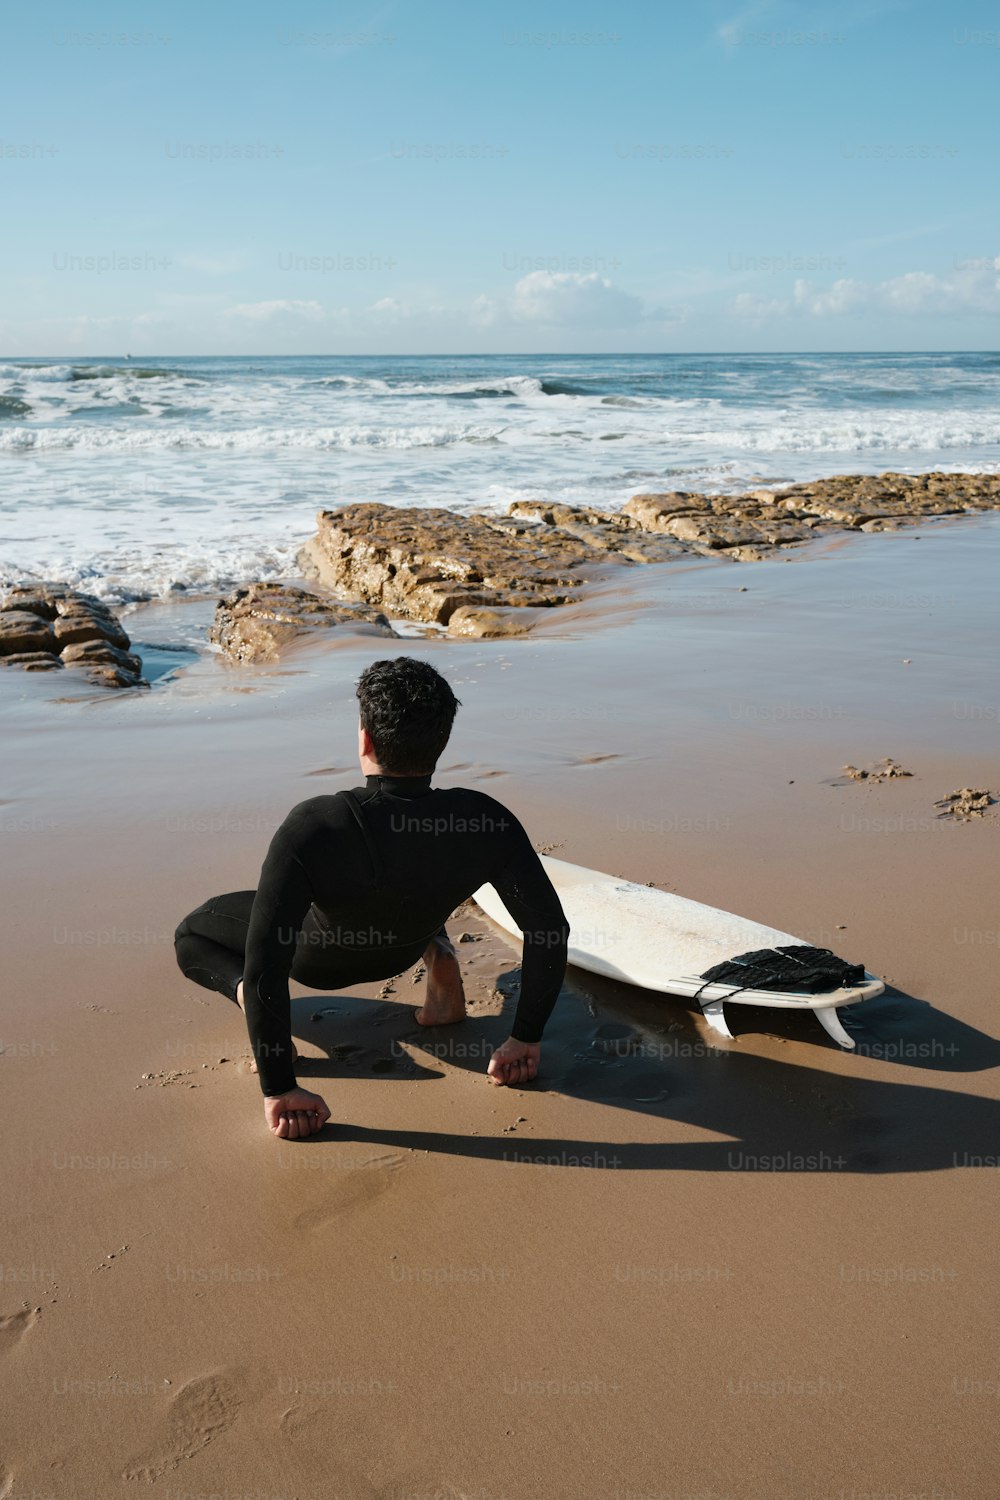 Un hombre sentado en una playa junto a una tabla de surf